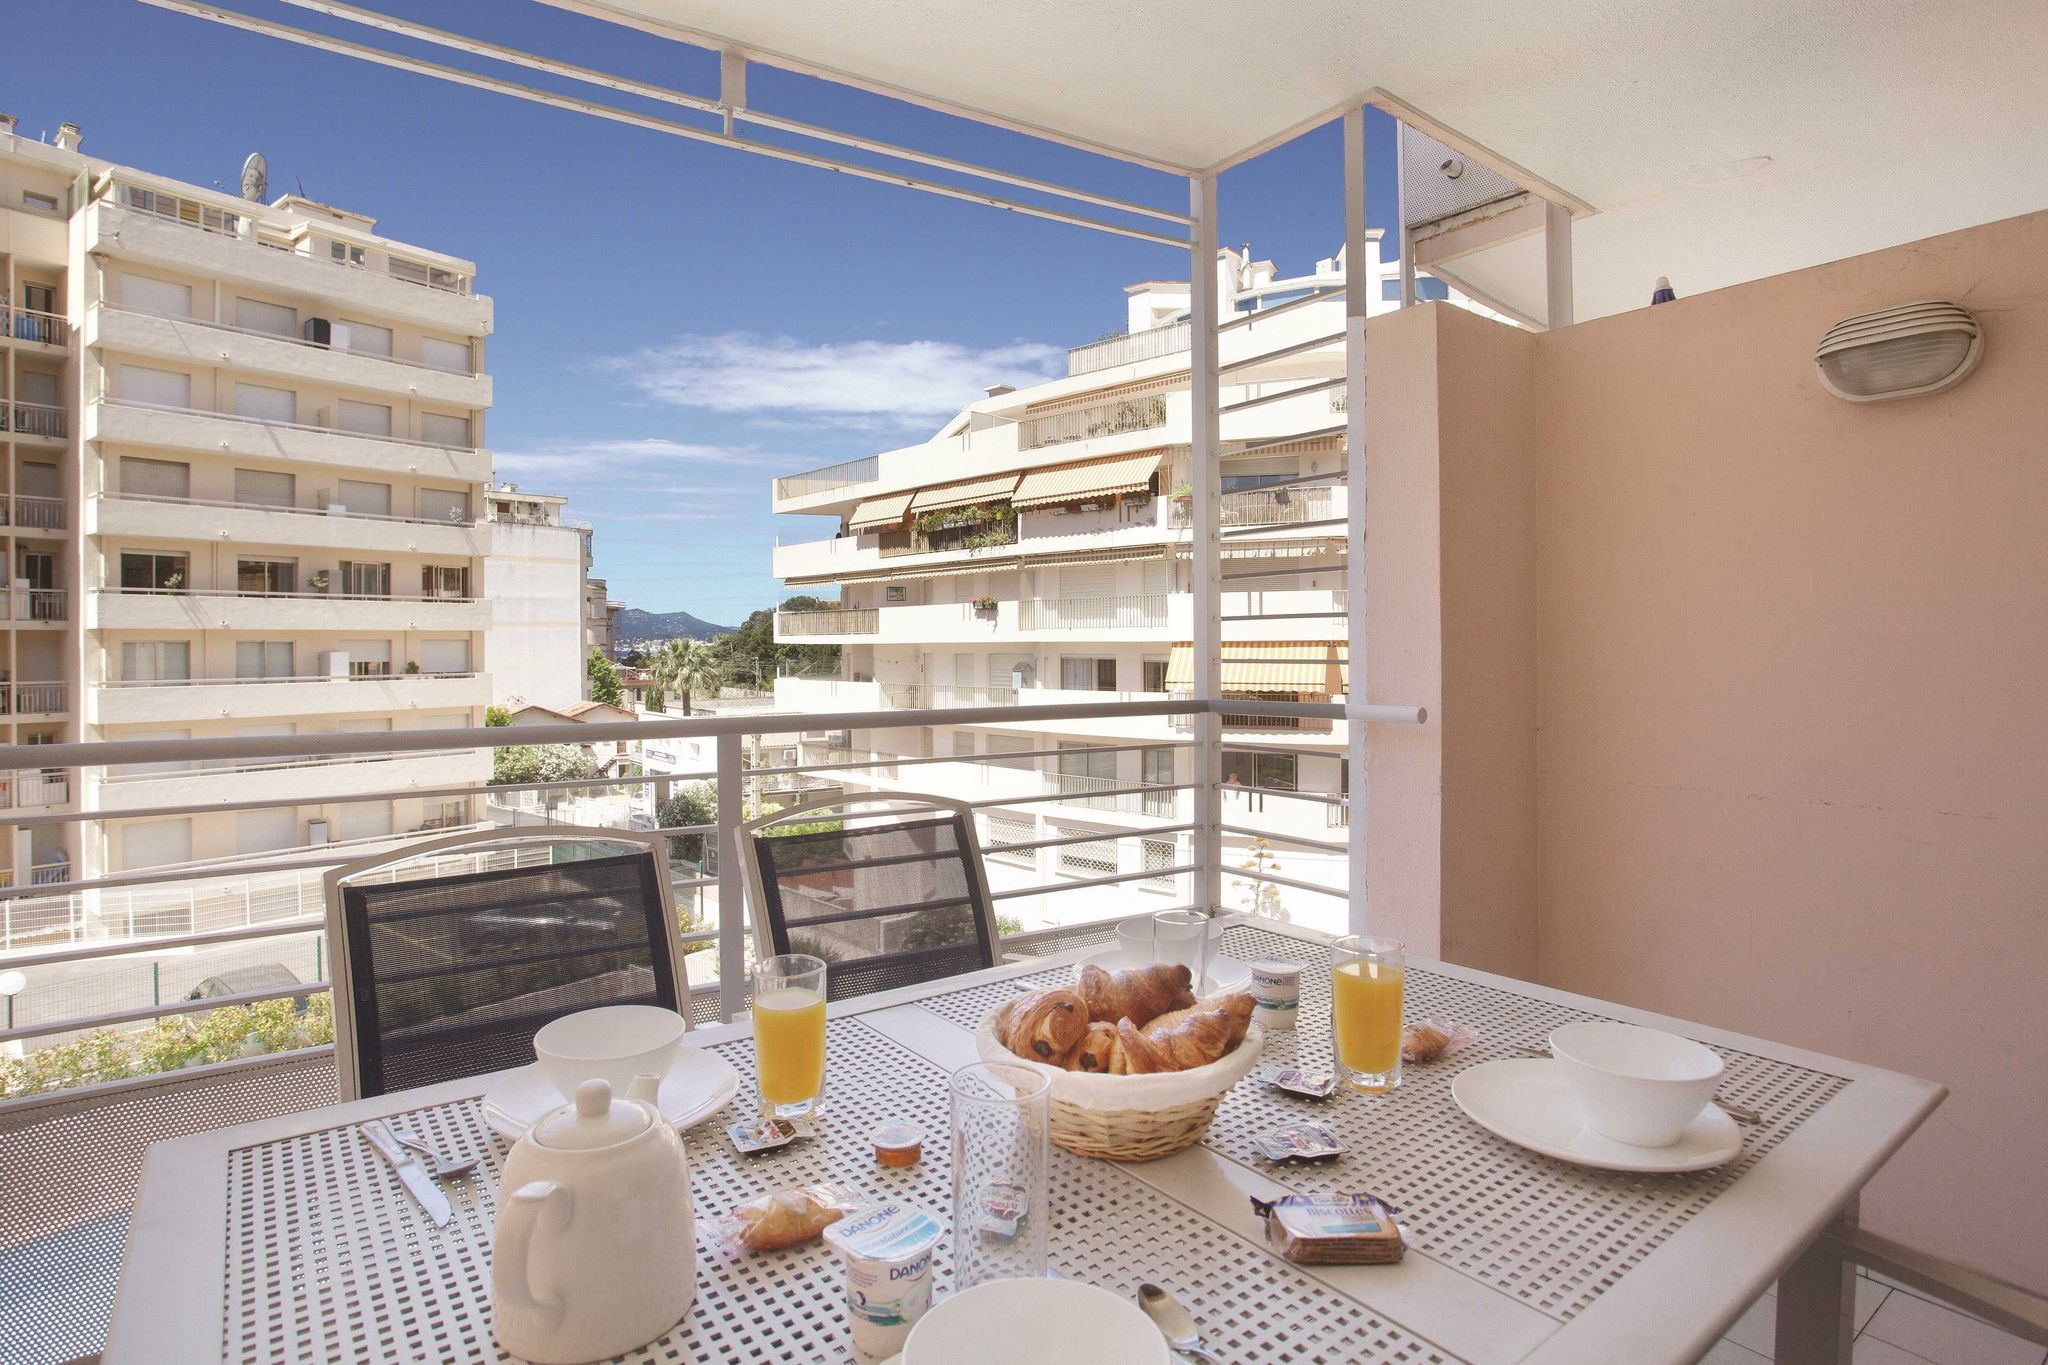 Appartement soigné et climatisé au cœur de Cannes